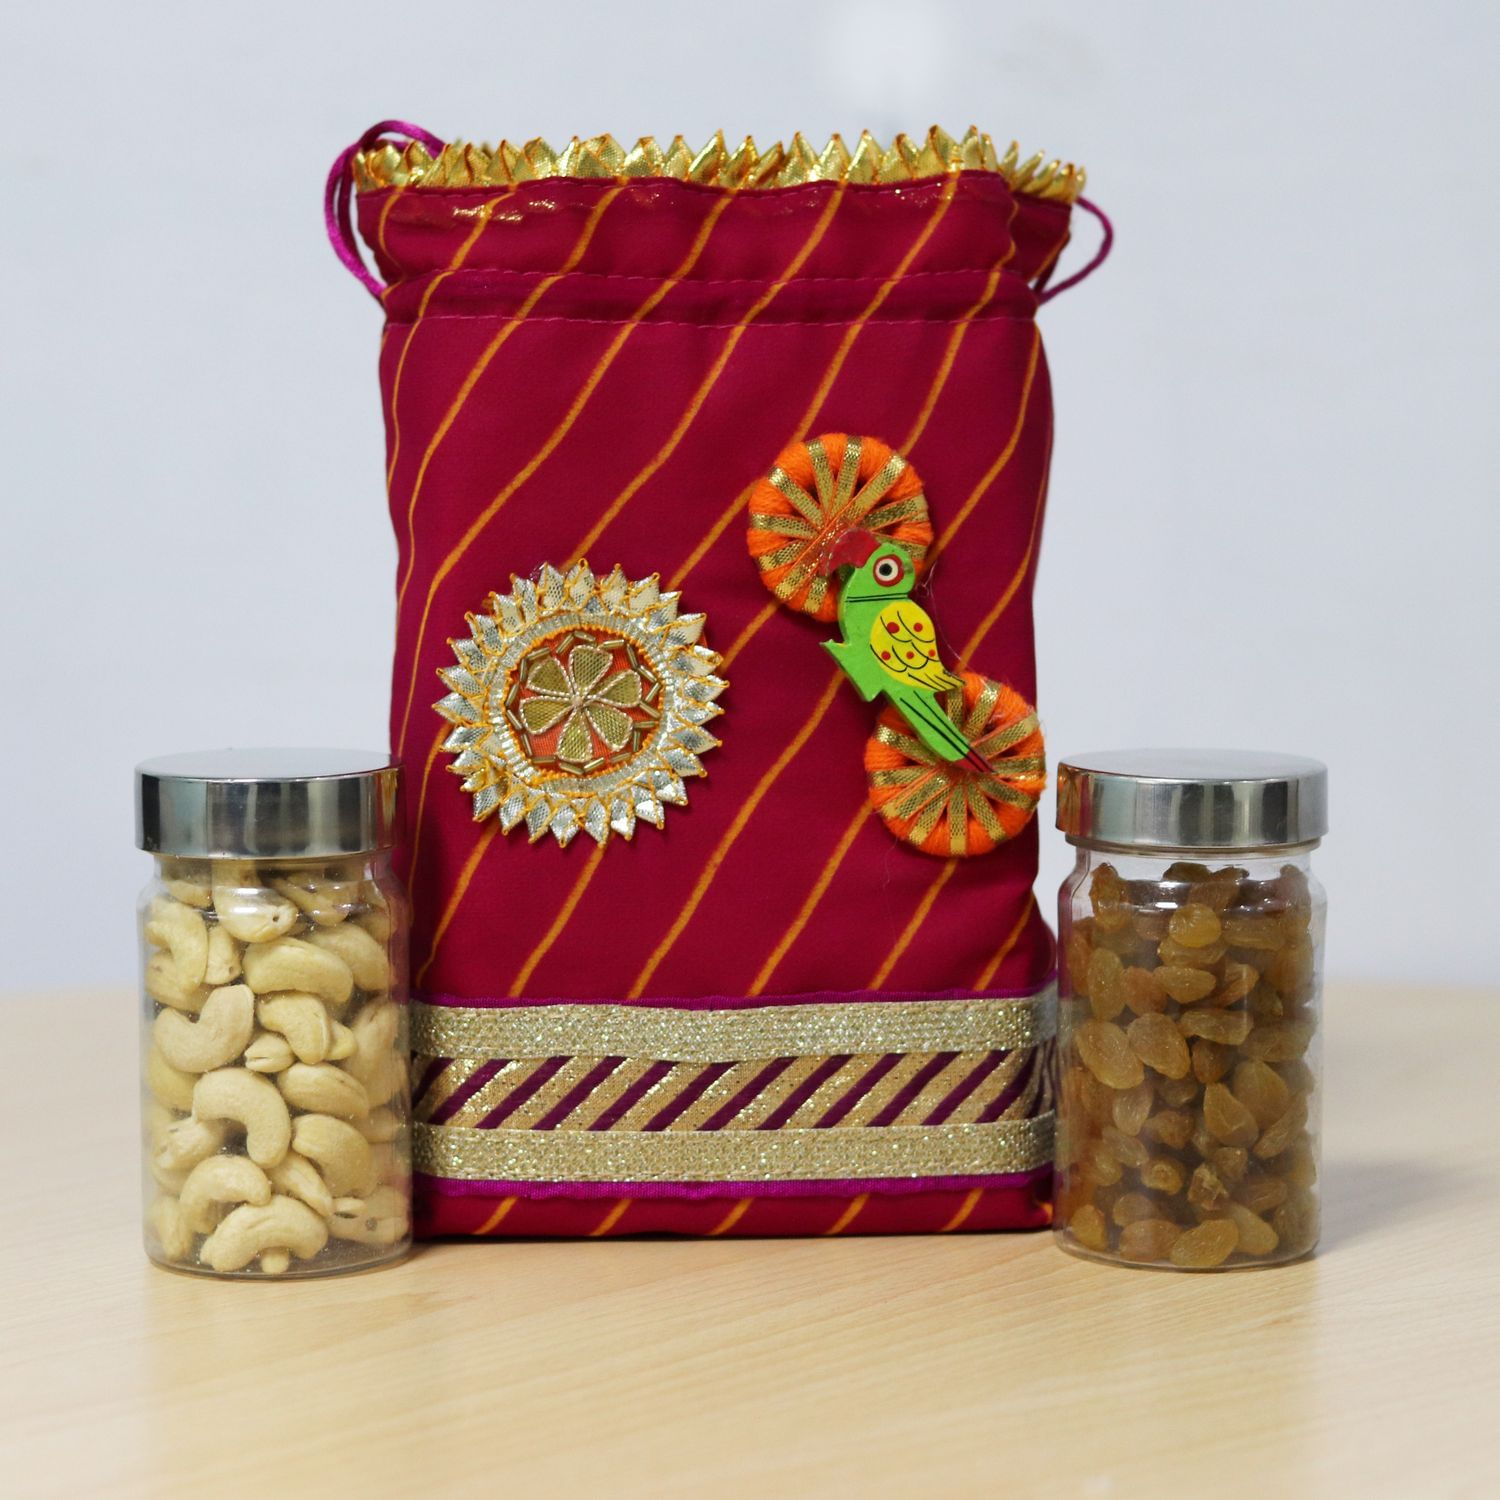 Nutraj Mixed Dry Fruit Gift Pack 400g (Cashews, Raisins)